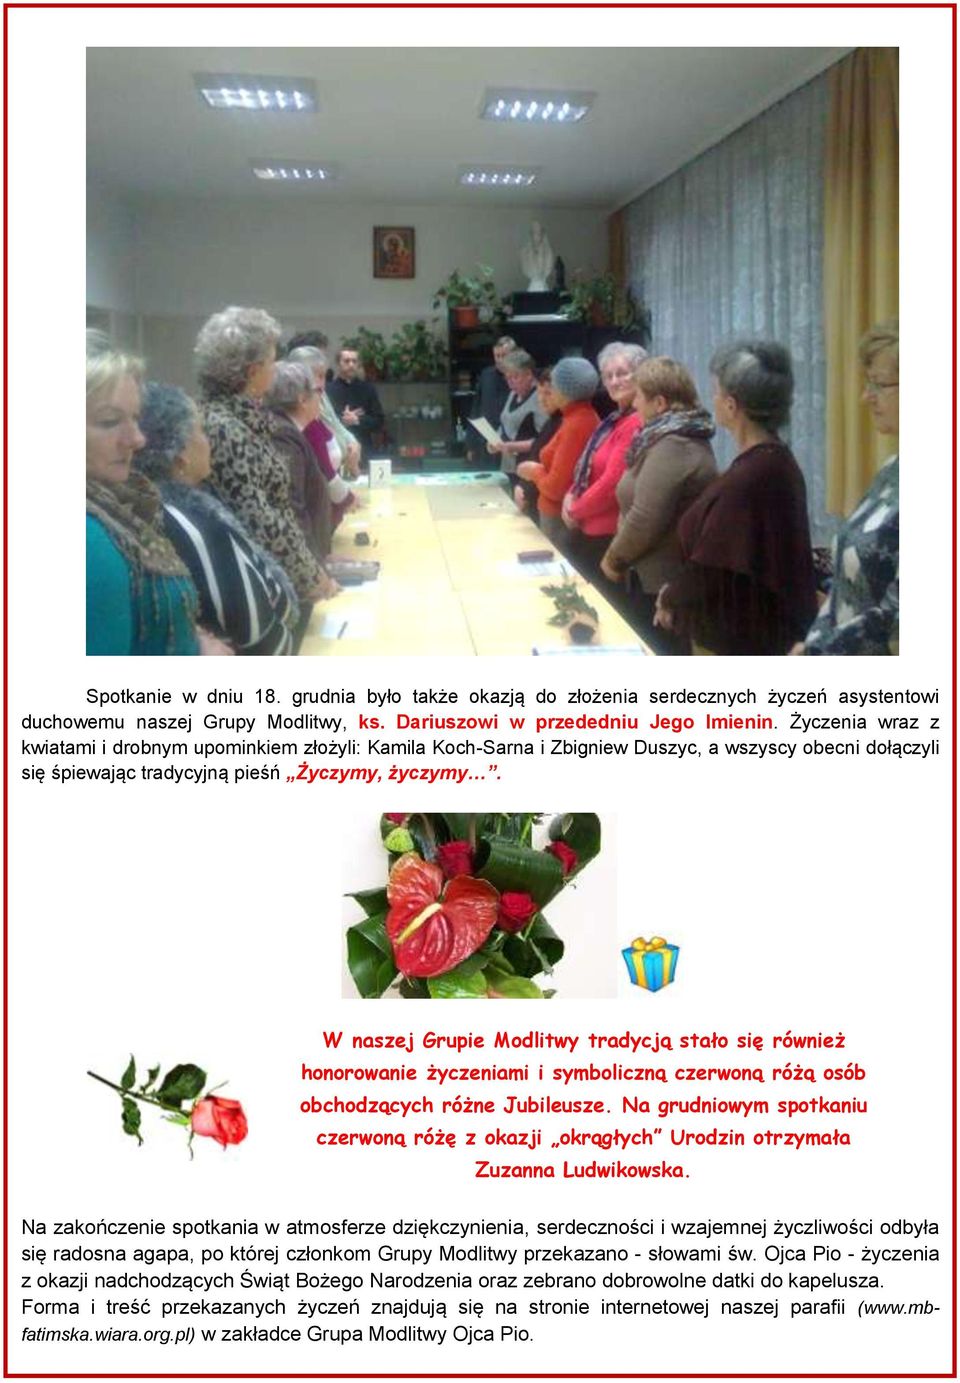 W naszej Grupie Modlitwy tradycją stało się również honorowanie życzeniami i symboliczną czerwoną różą osób obchodzących różne Jubileusze.